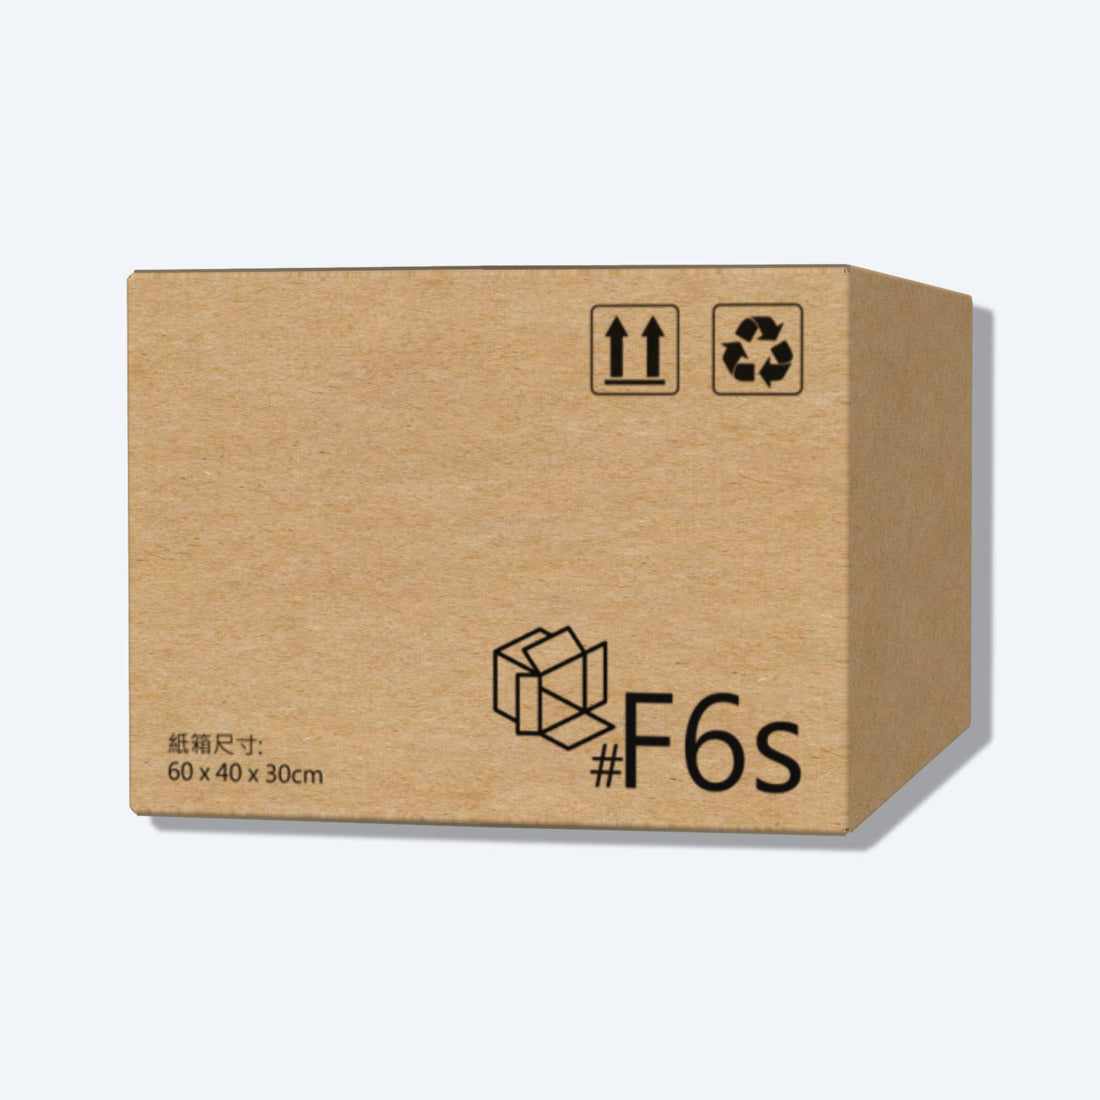 順豐速運F6s尺寸紙箱側視圖，展示尺寸和質感，是適合大型物品運輸的理想選擇。易於組裝，方便實用，適合運送家具、電器等大型物品。